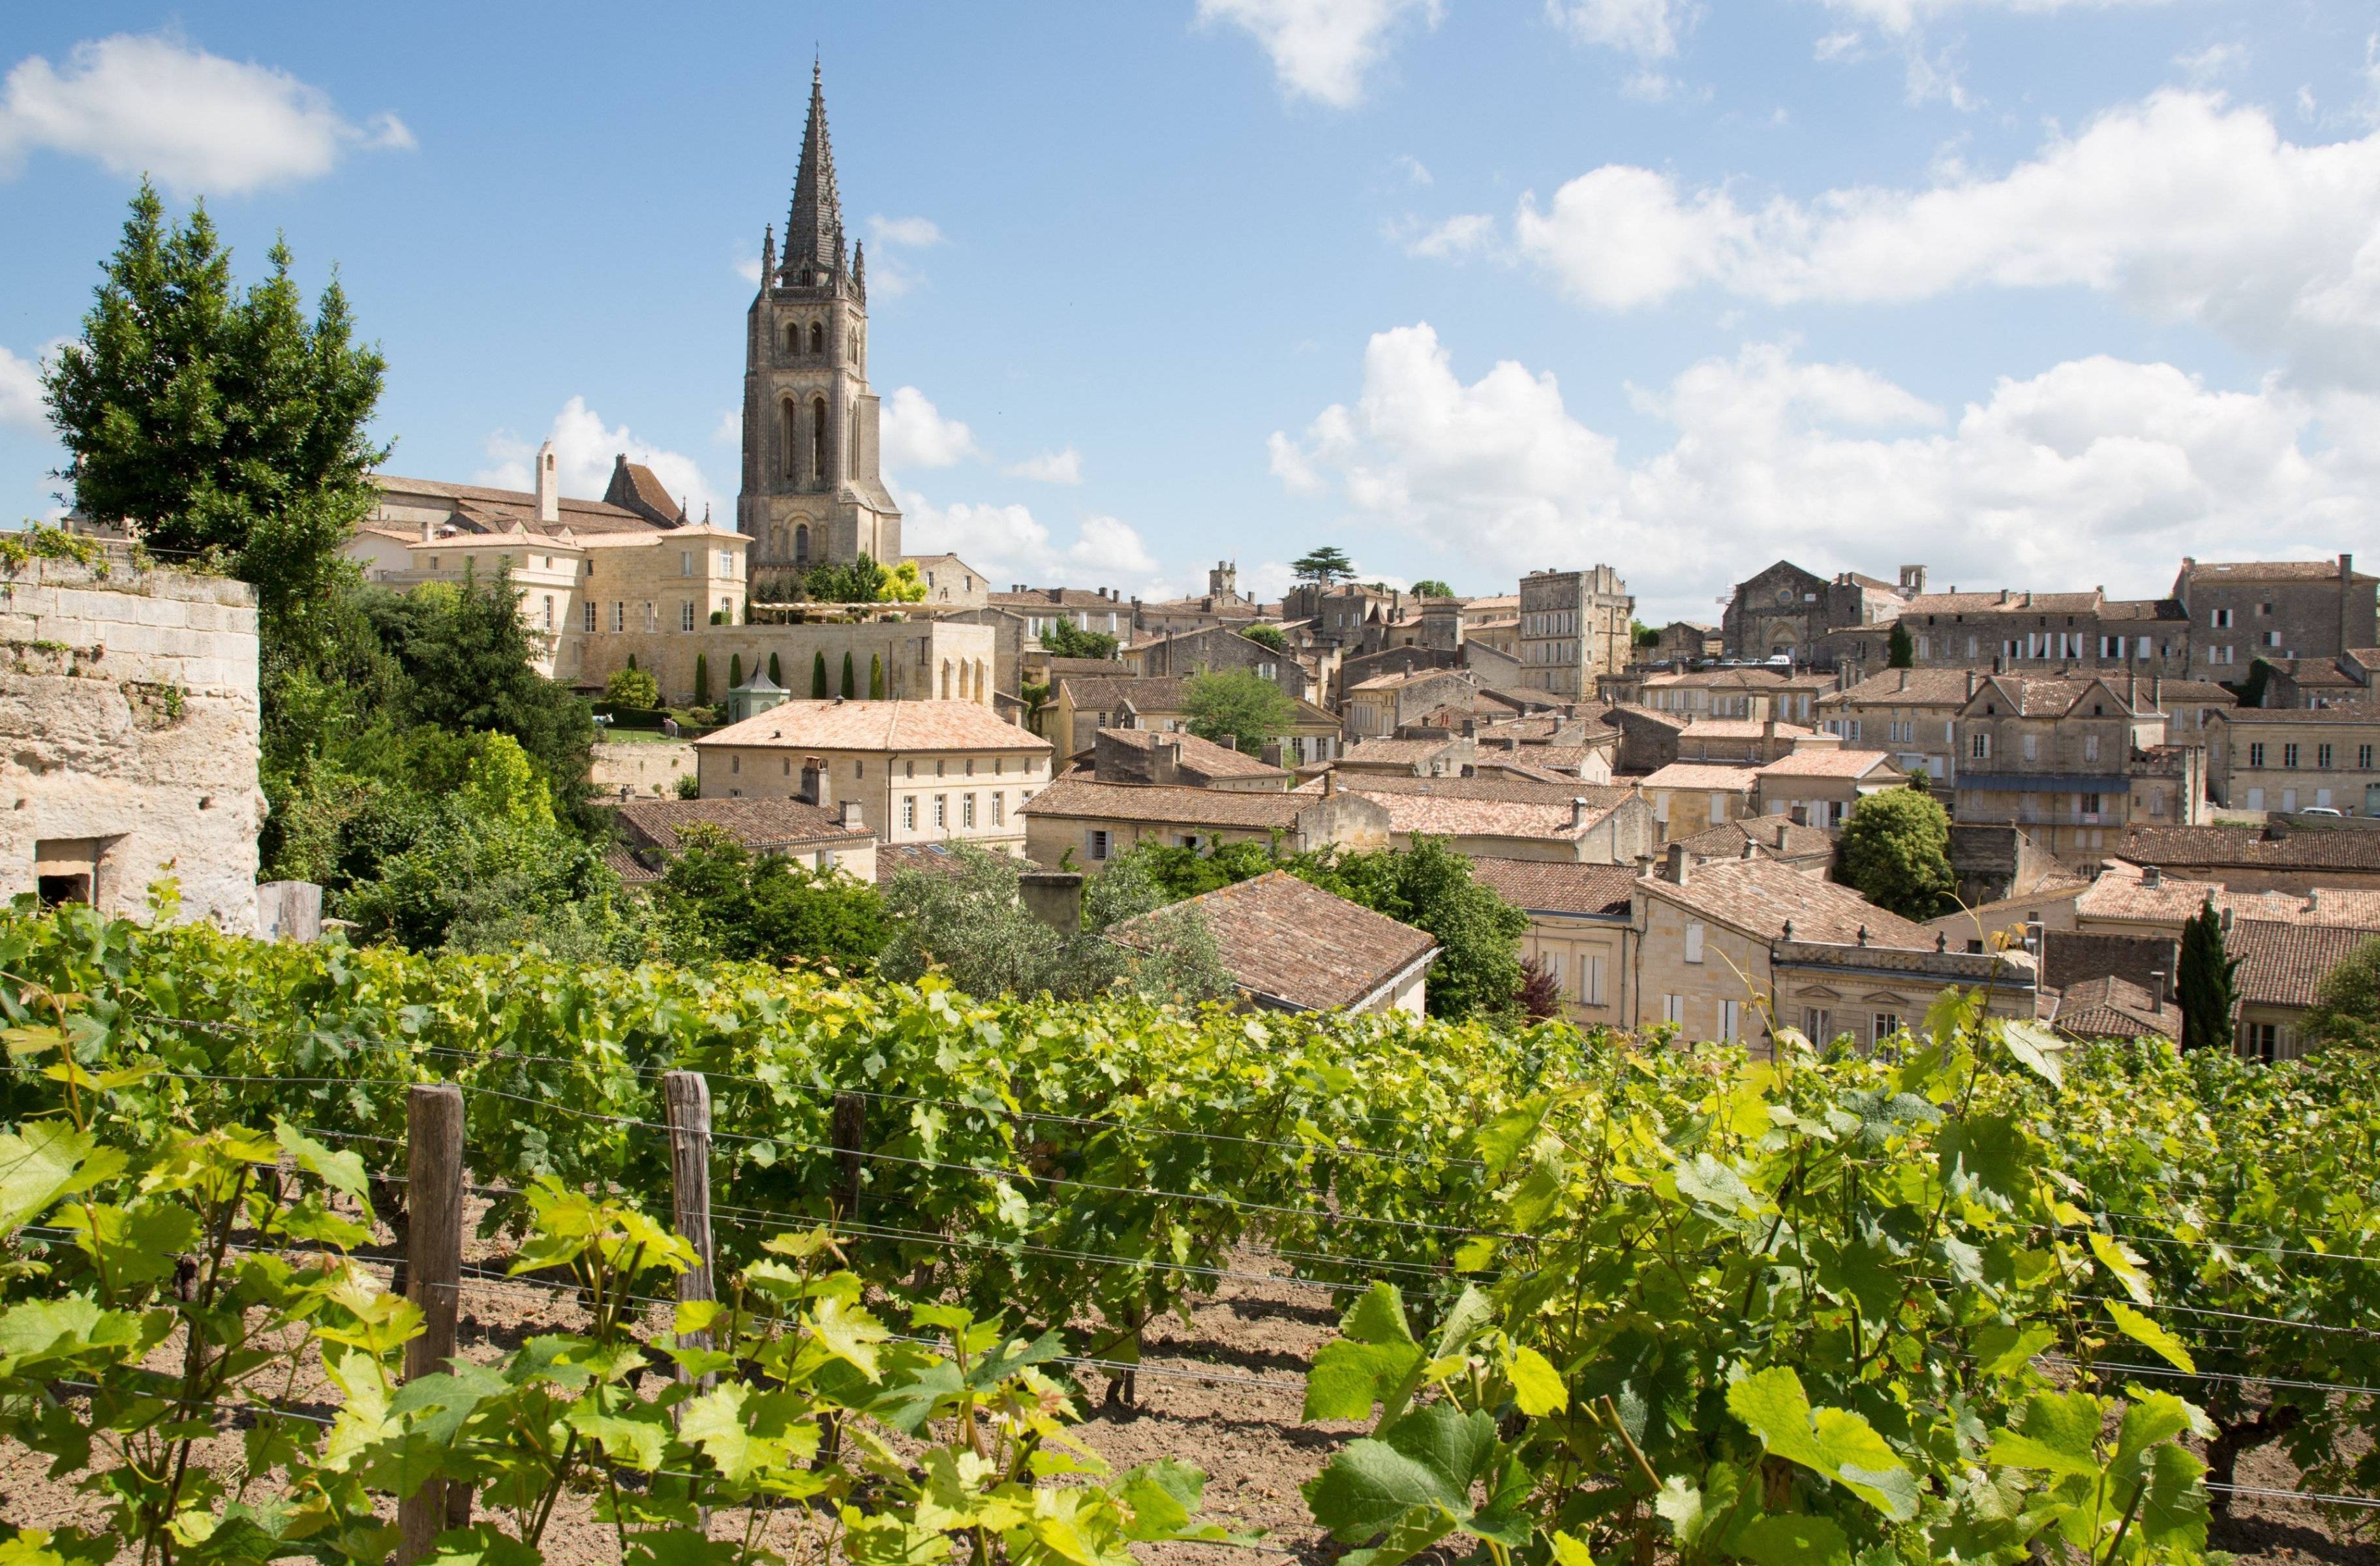 Le vignoble de Saint-Émilion et son village médiéval